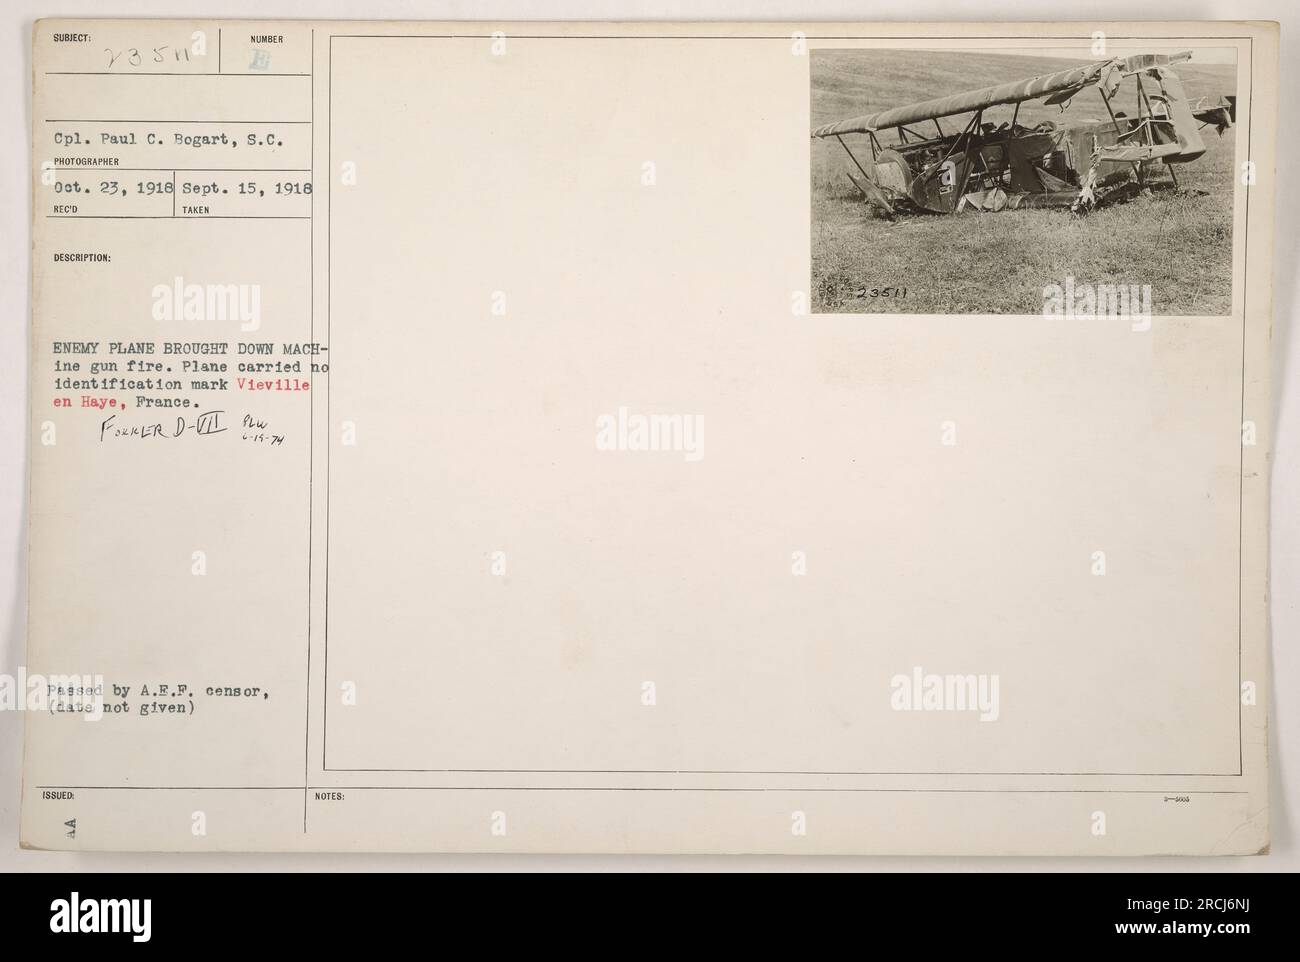 La photographie du caporal Paul C. Bogart capture le moment remarquable où un avion ennemi est abattu par des tirs de mitrailleuses. L'avion, qui n'avait pas de marques d'identification, peut être vu s'écraser à Vieville en Haye, France. Cette image a été prise le 15 septembre 1918 et a été approuvée pour publication par le censeur de l'A.E.F. Remarque : photo numéro 13511. Banque D'Images